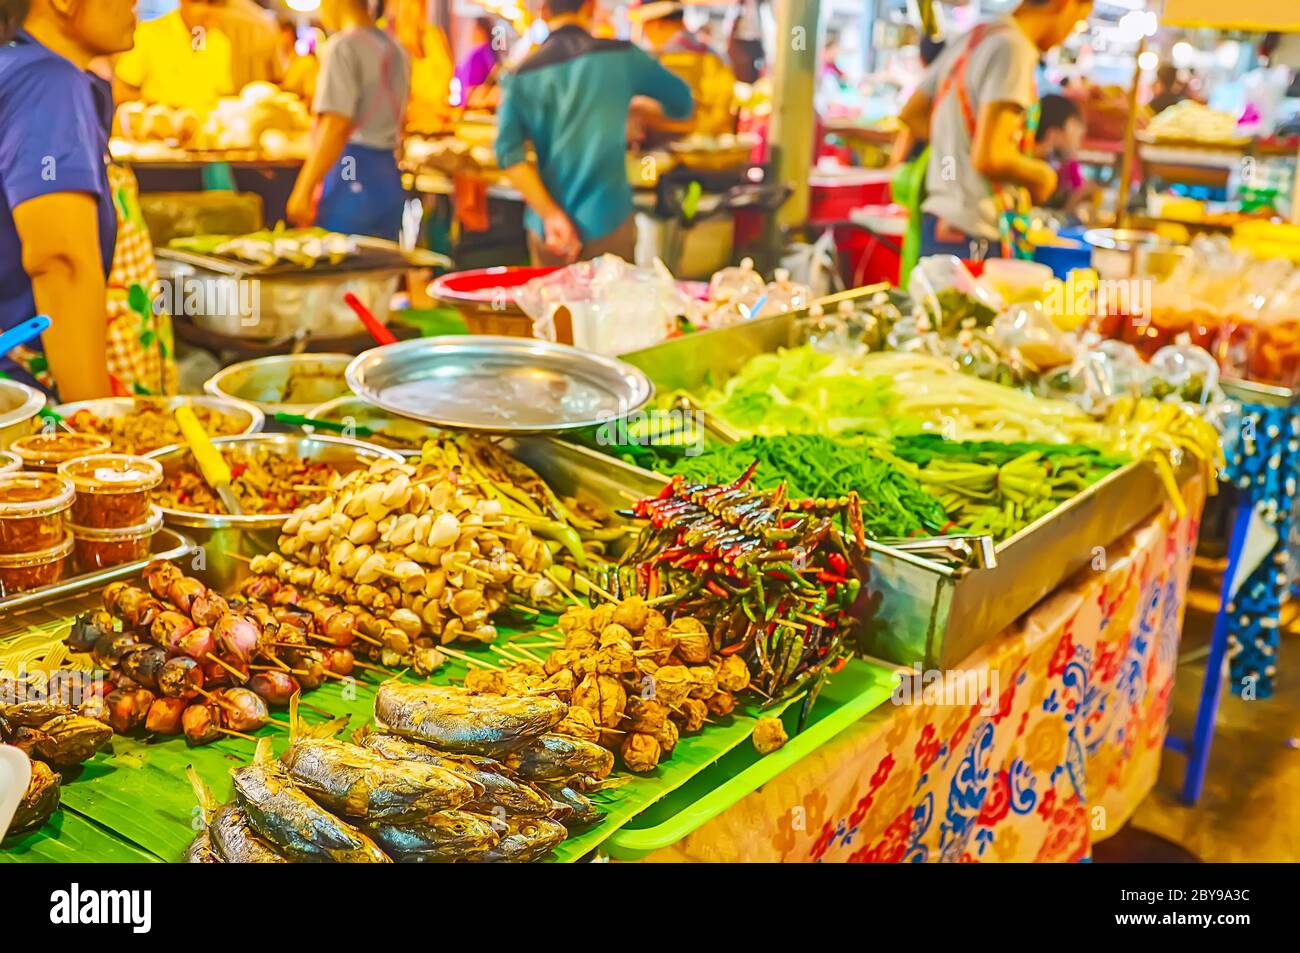 Le comptoir de la stalle avec des tas de savoureux plats thaïlandais grillés sur brochettes - maquereau, piments, ail et champignons, marché Talad Saphan Phut, Bang Banque D'Images